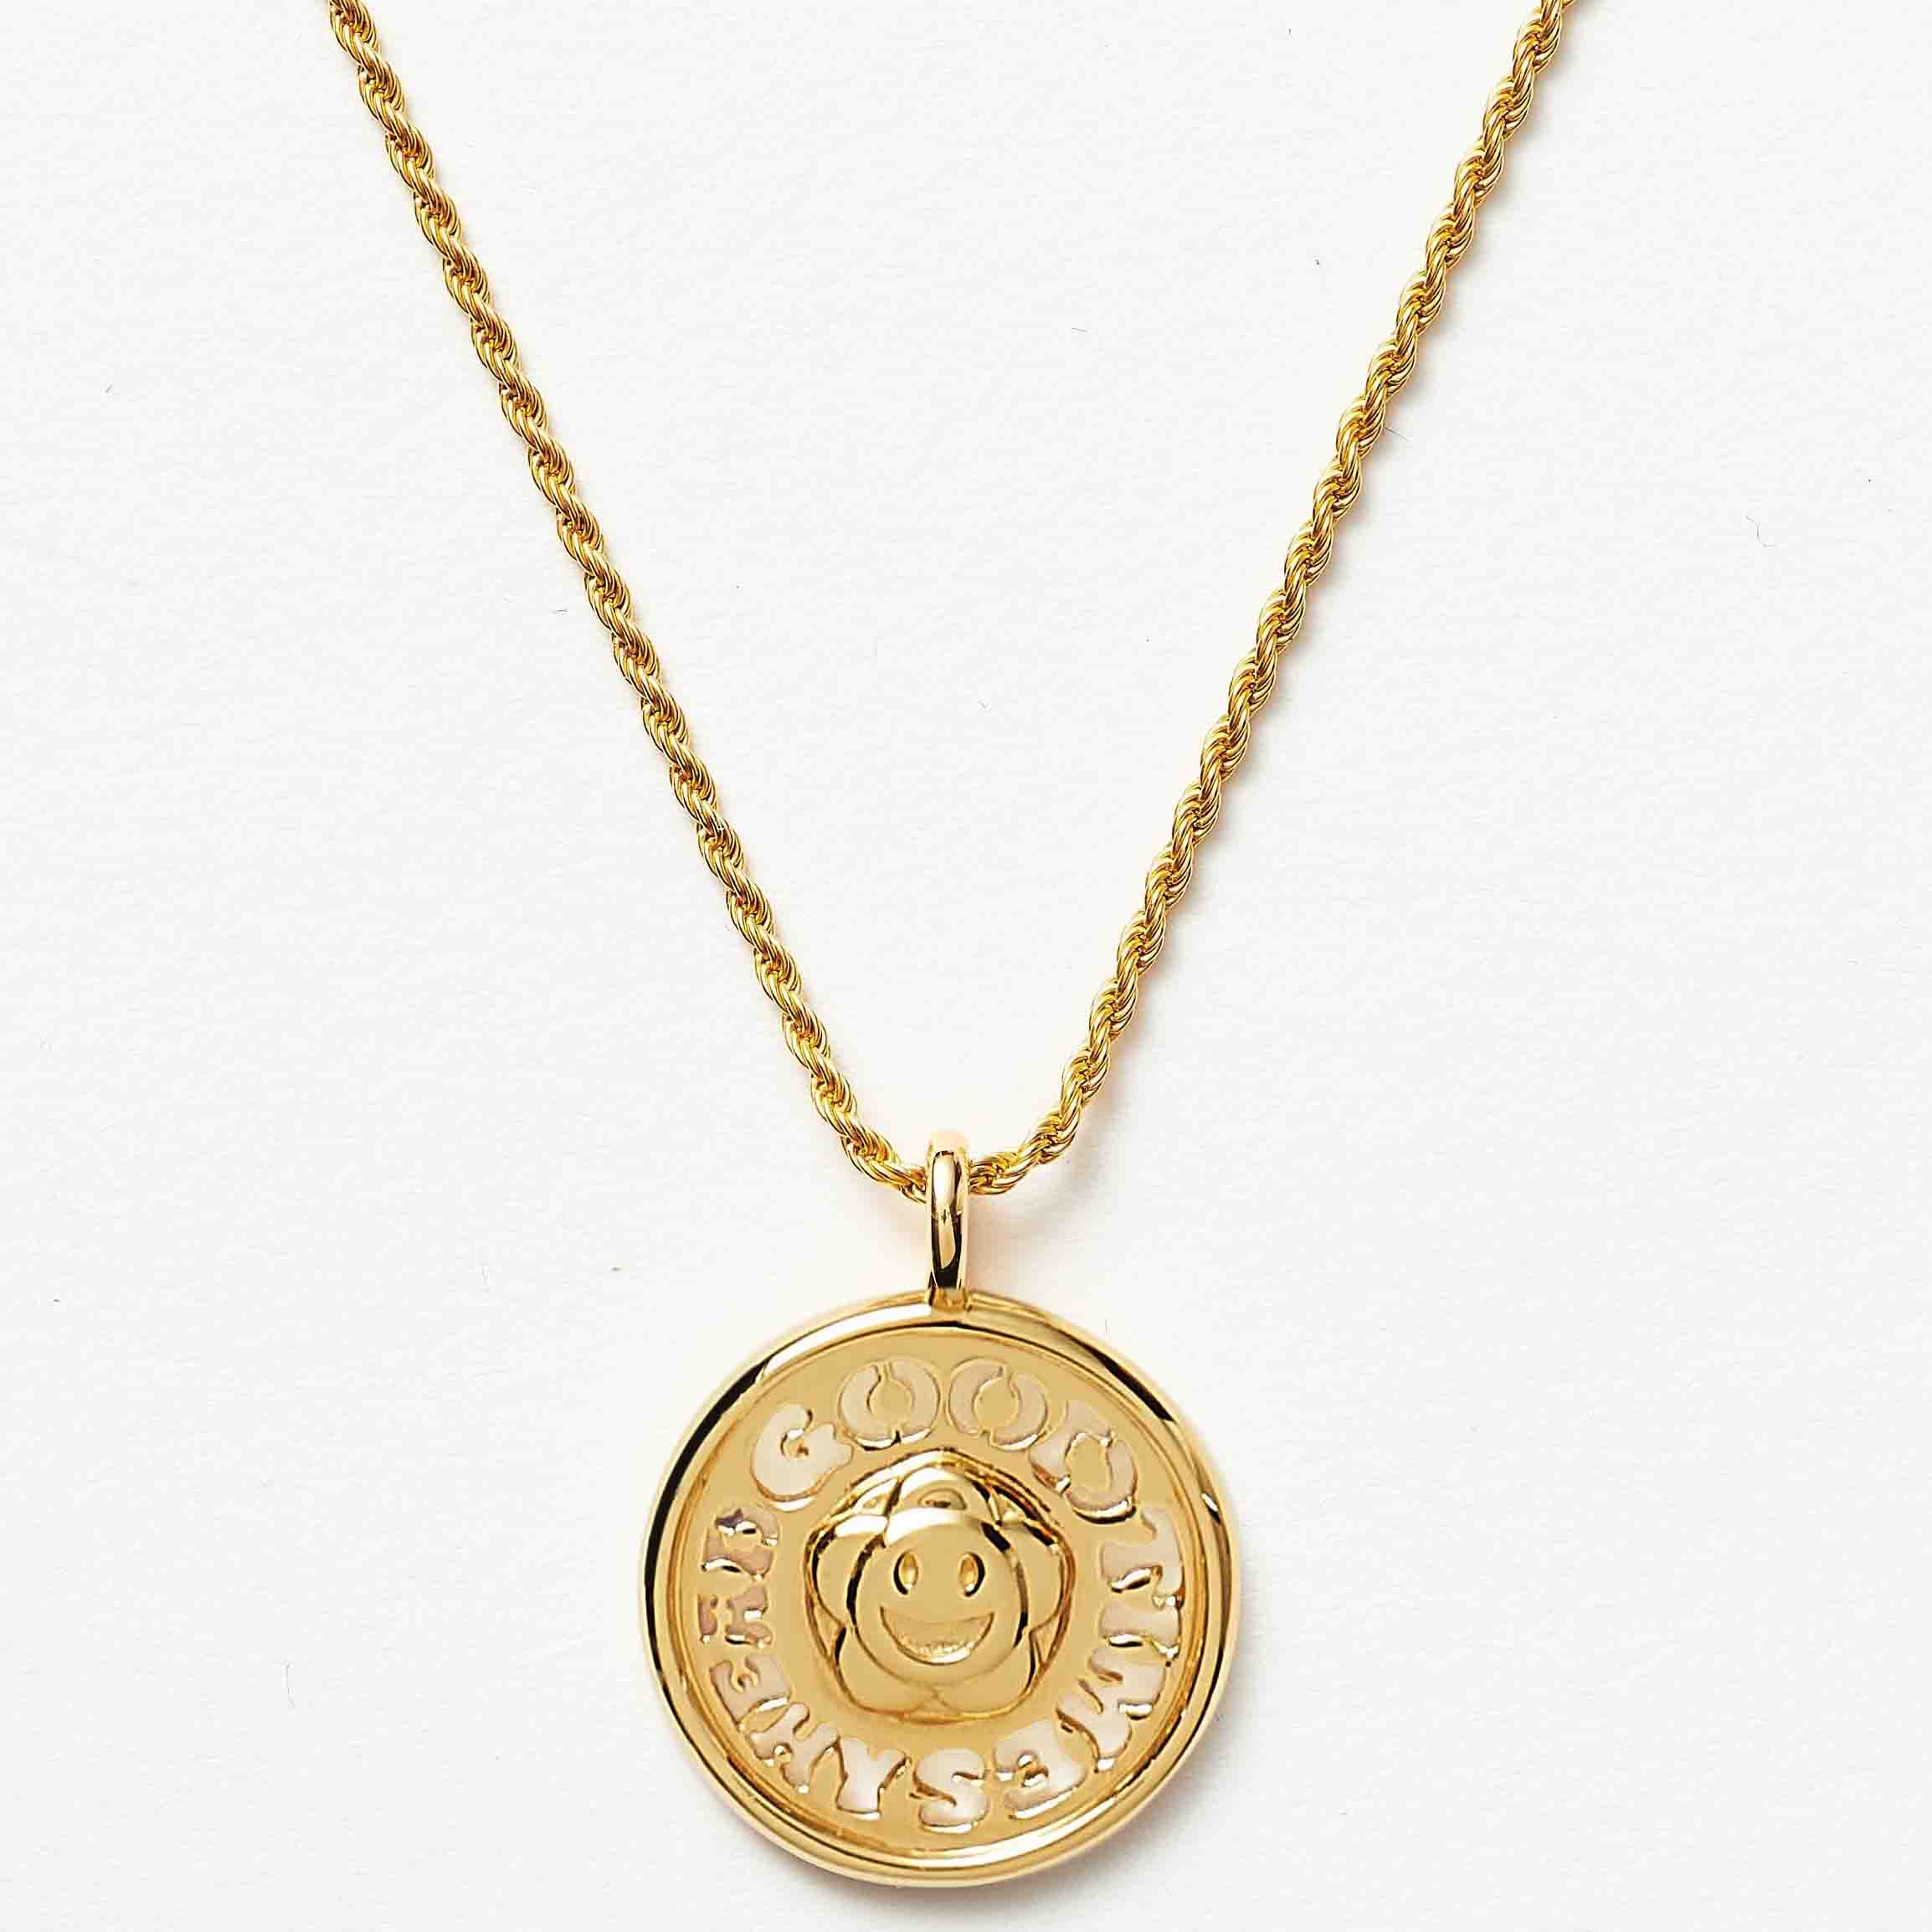 Naszyjniki z medalionem słońca, pozłacane 18-karatowym złotem na srebrze lub miedzi, zgodnie z Twoim wzorem